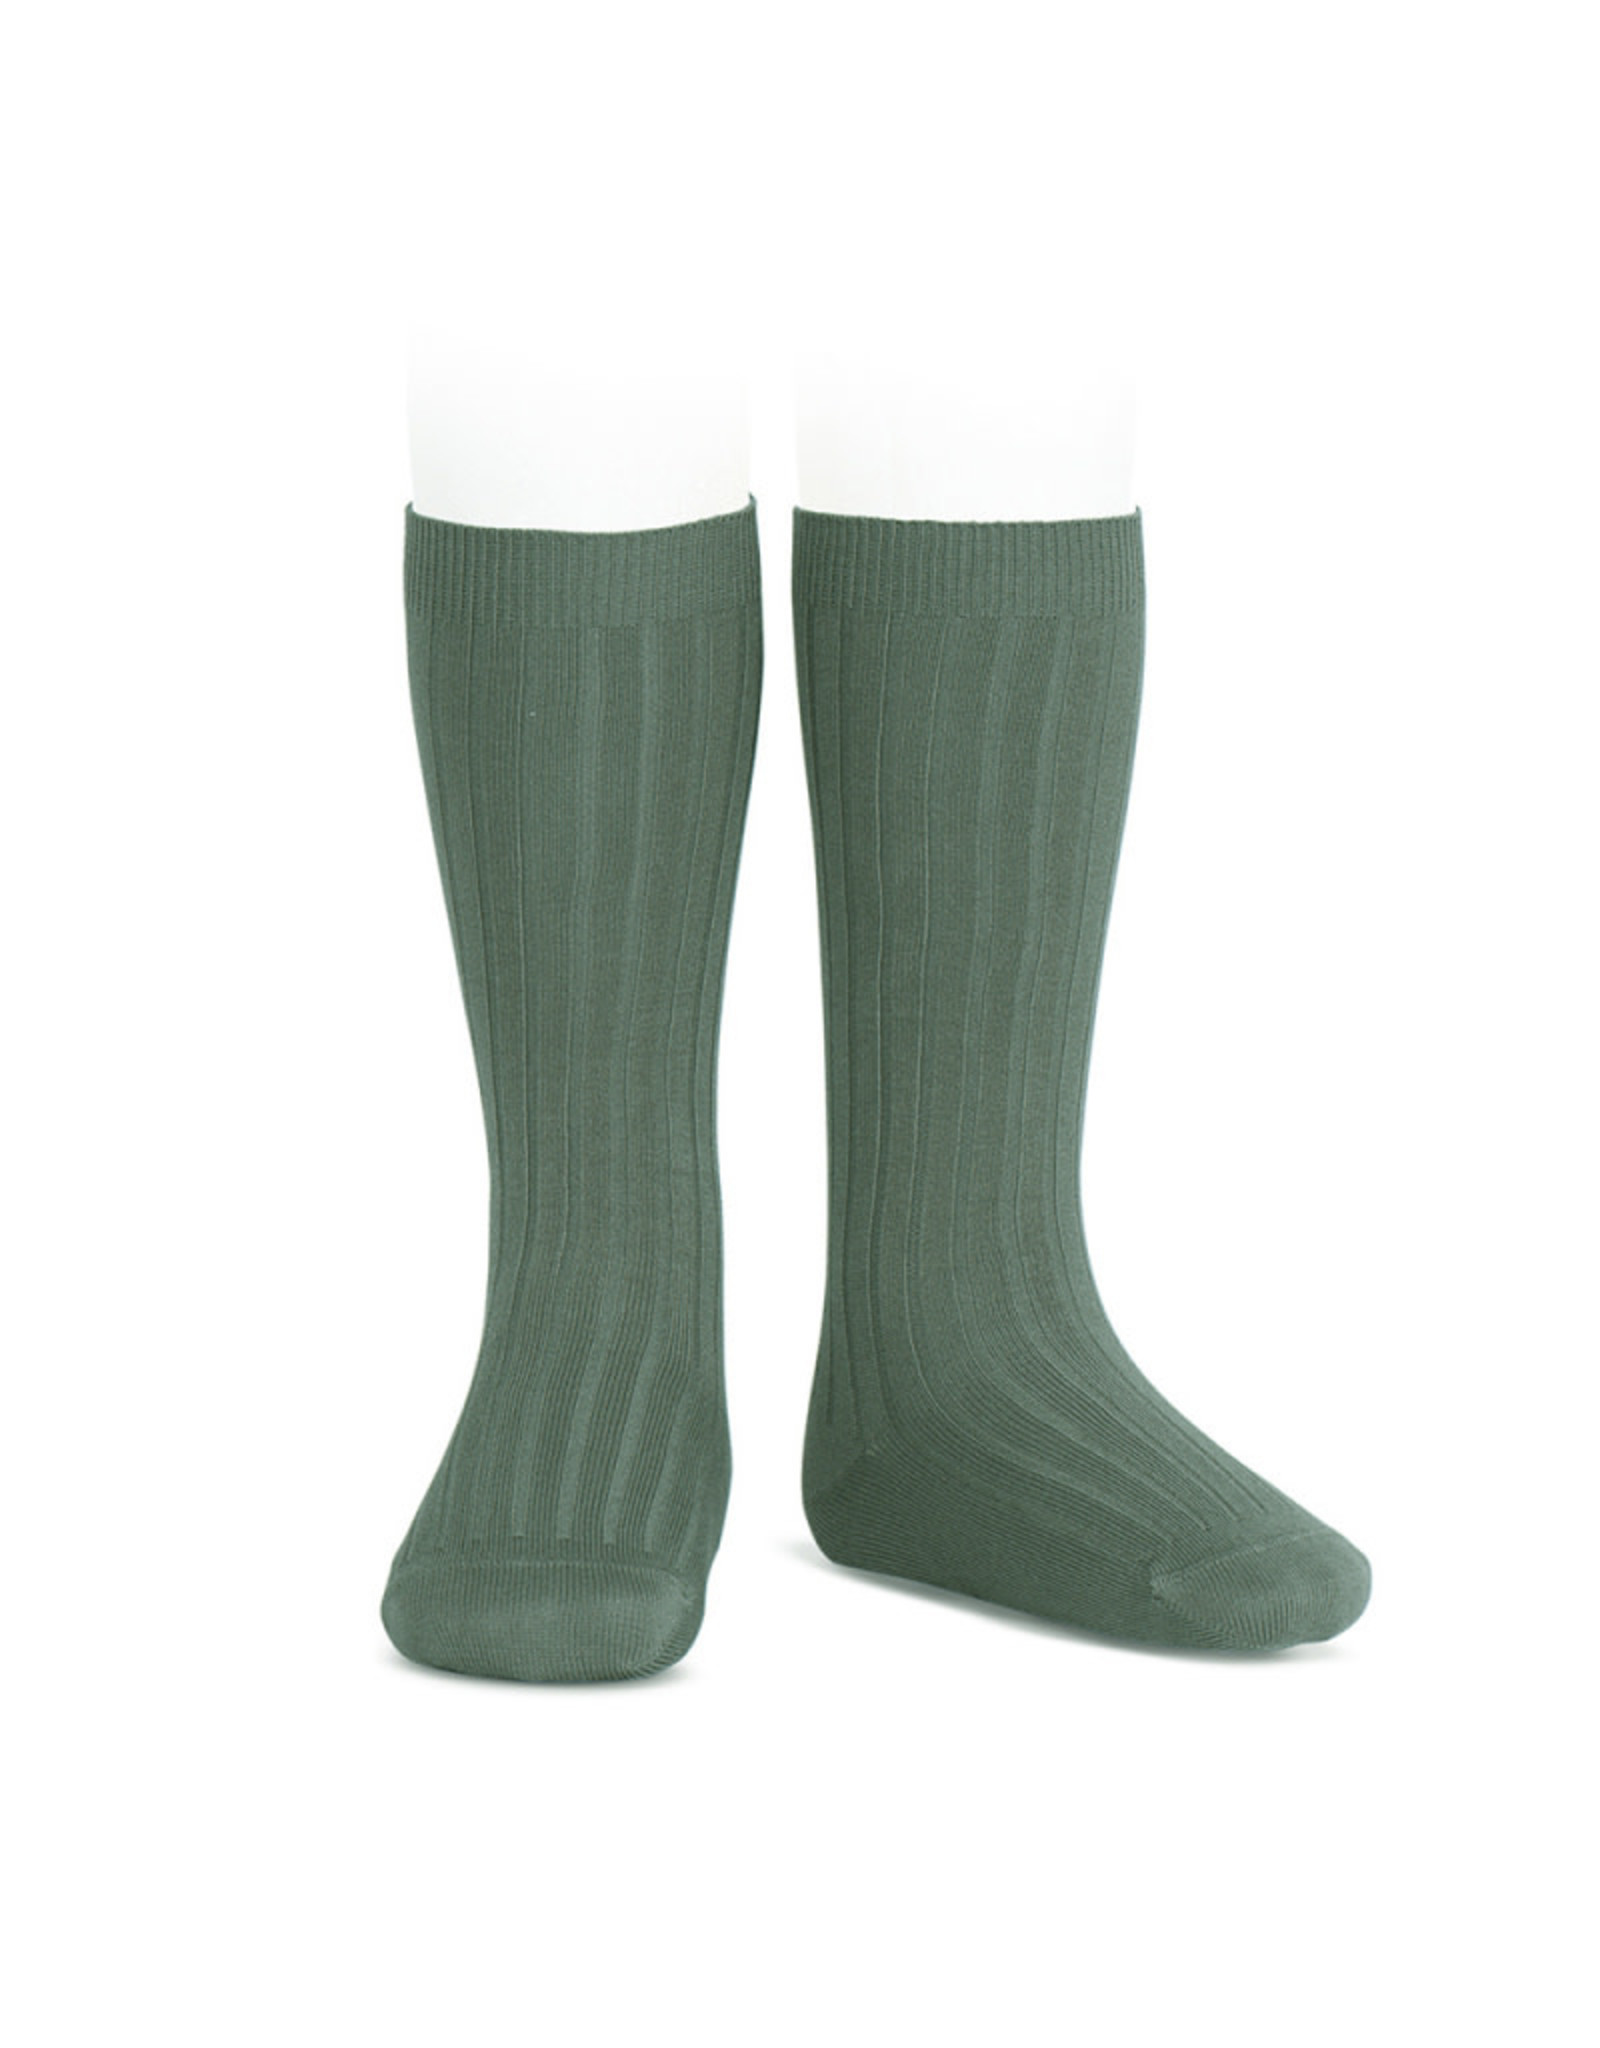 CONDOR Lichen Ribbed Socks